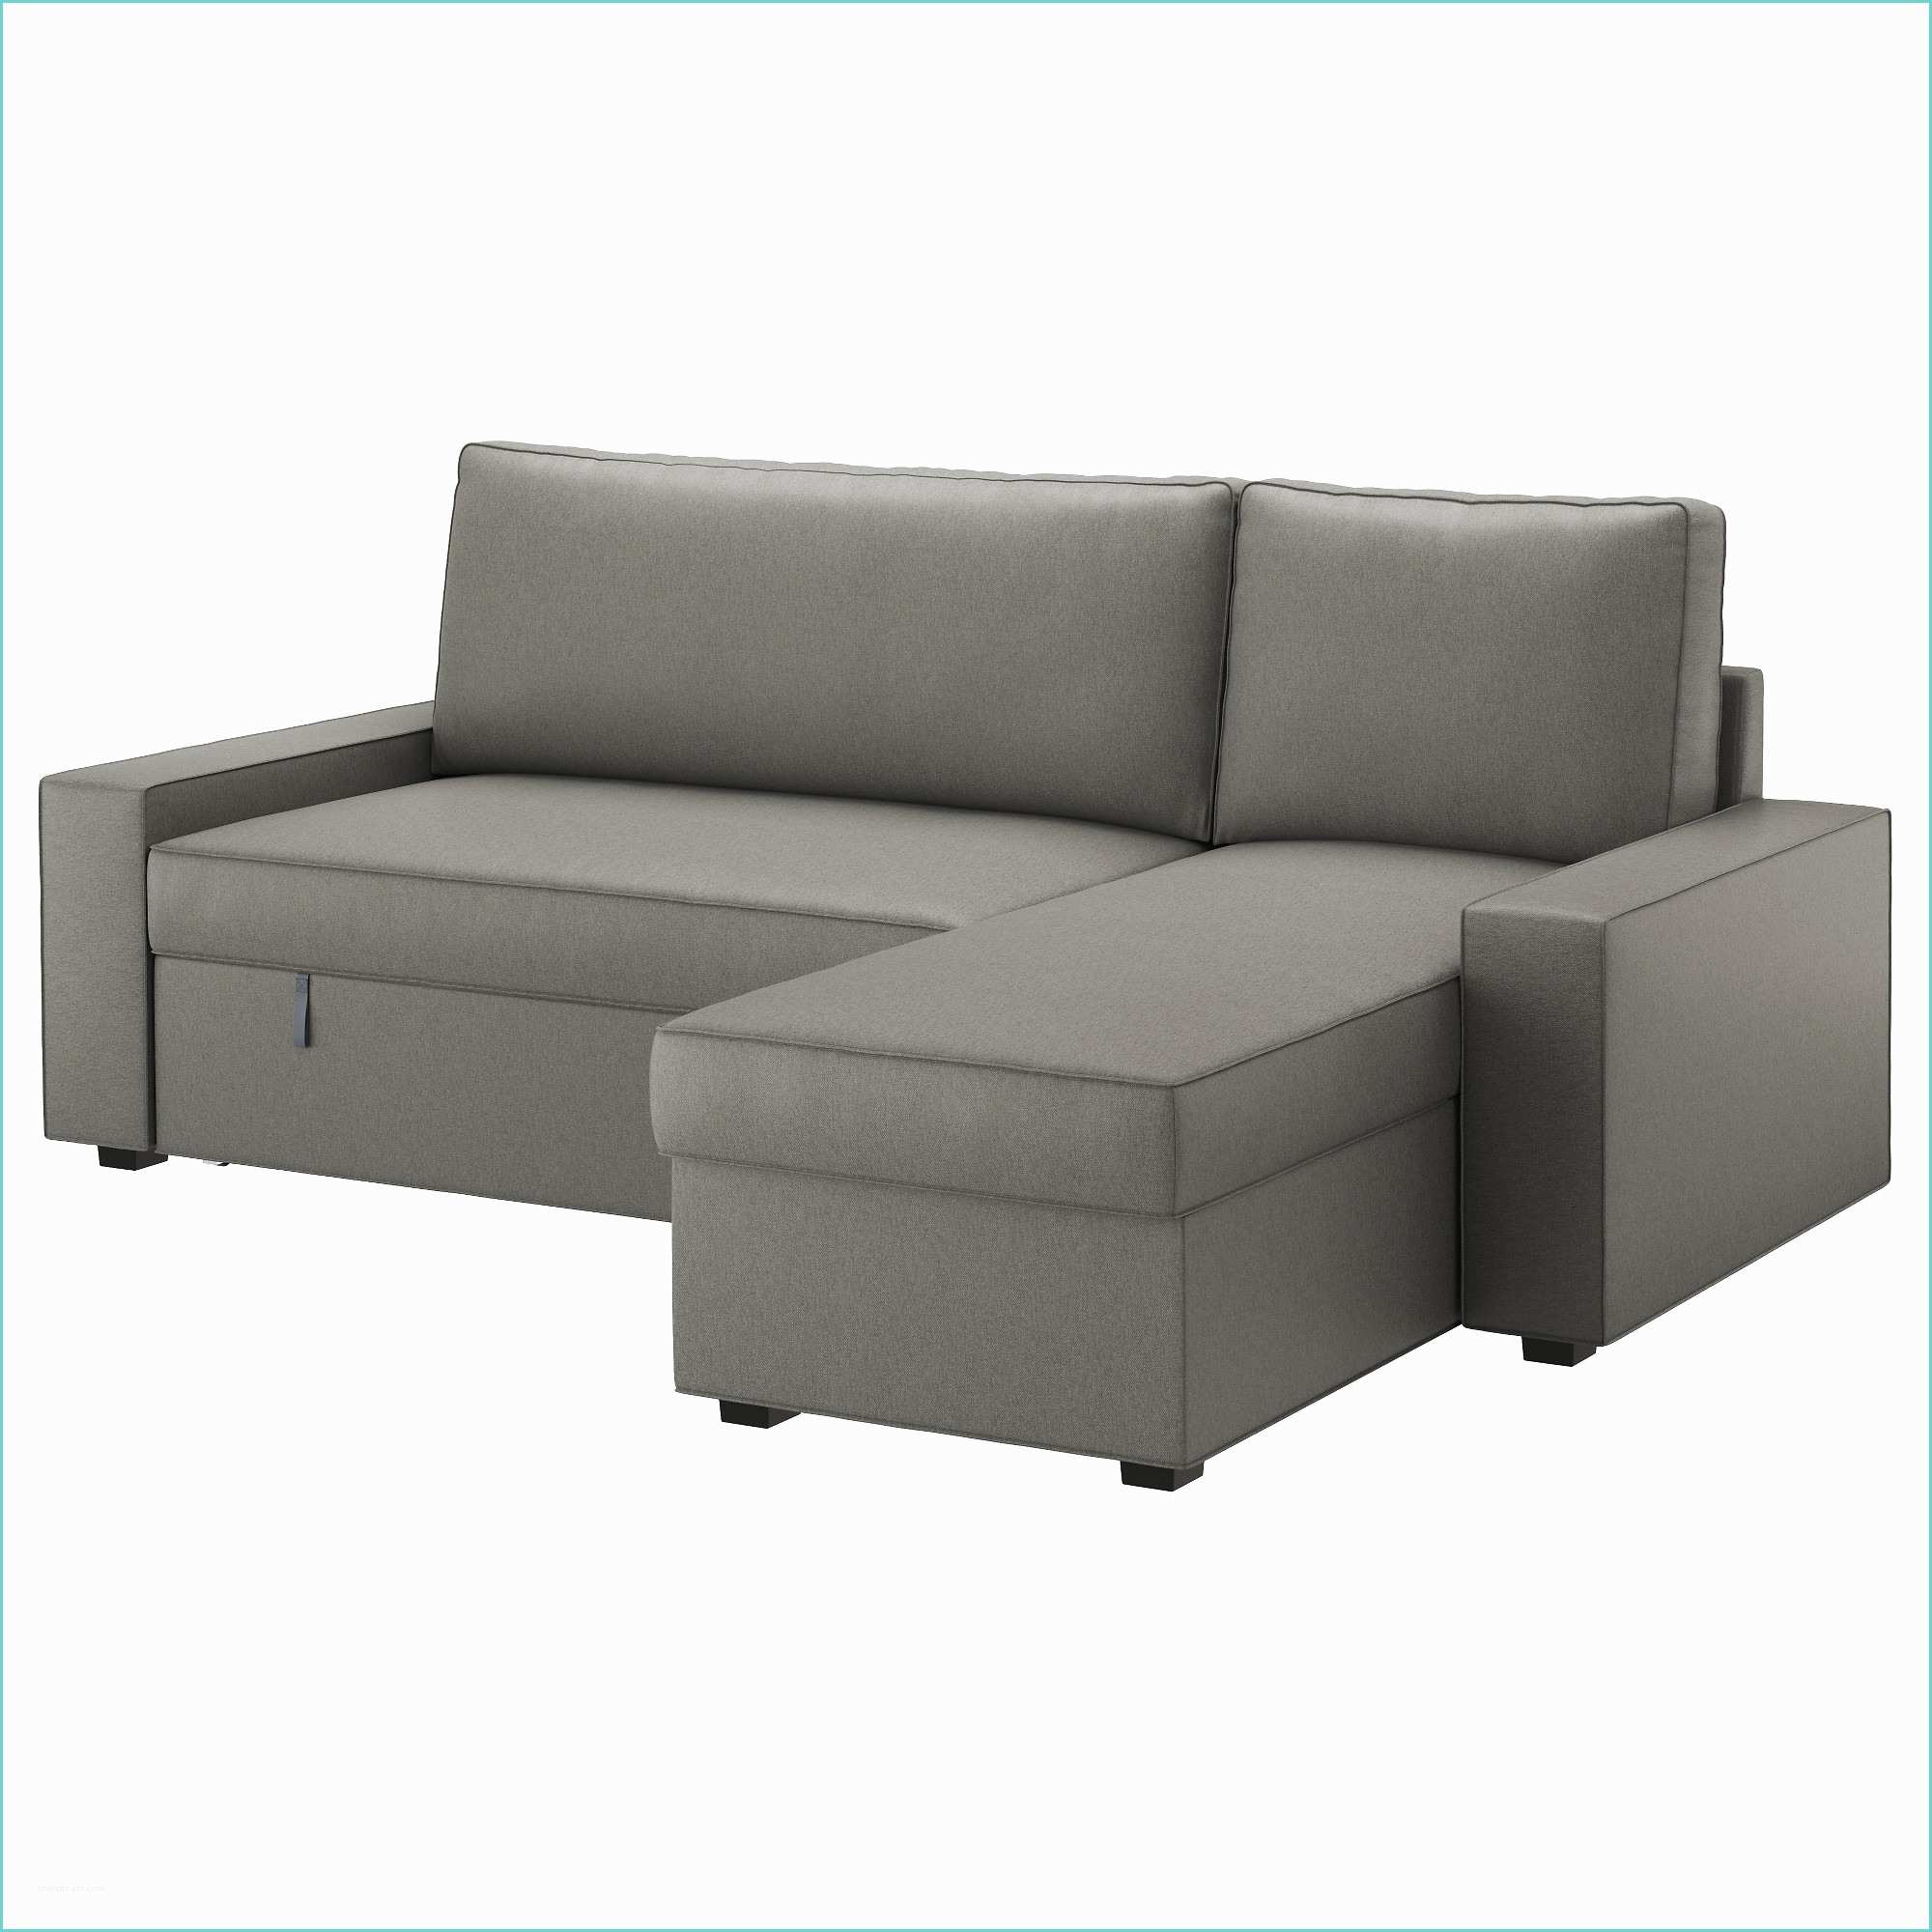 Sofa Beds In Ikea sofa Beds & Futons